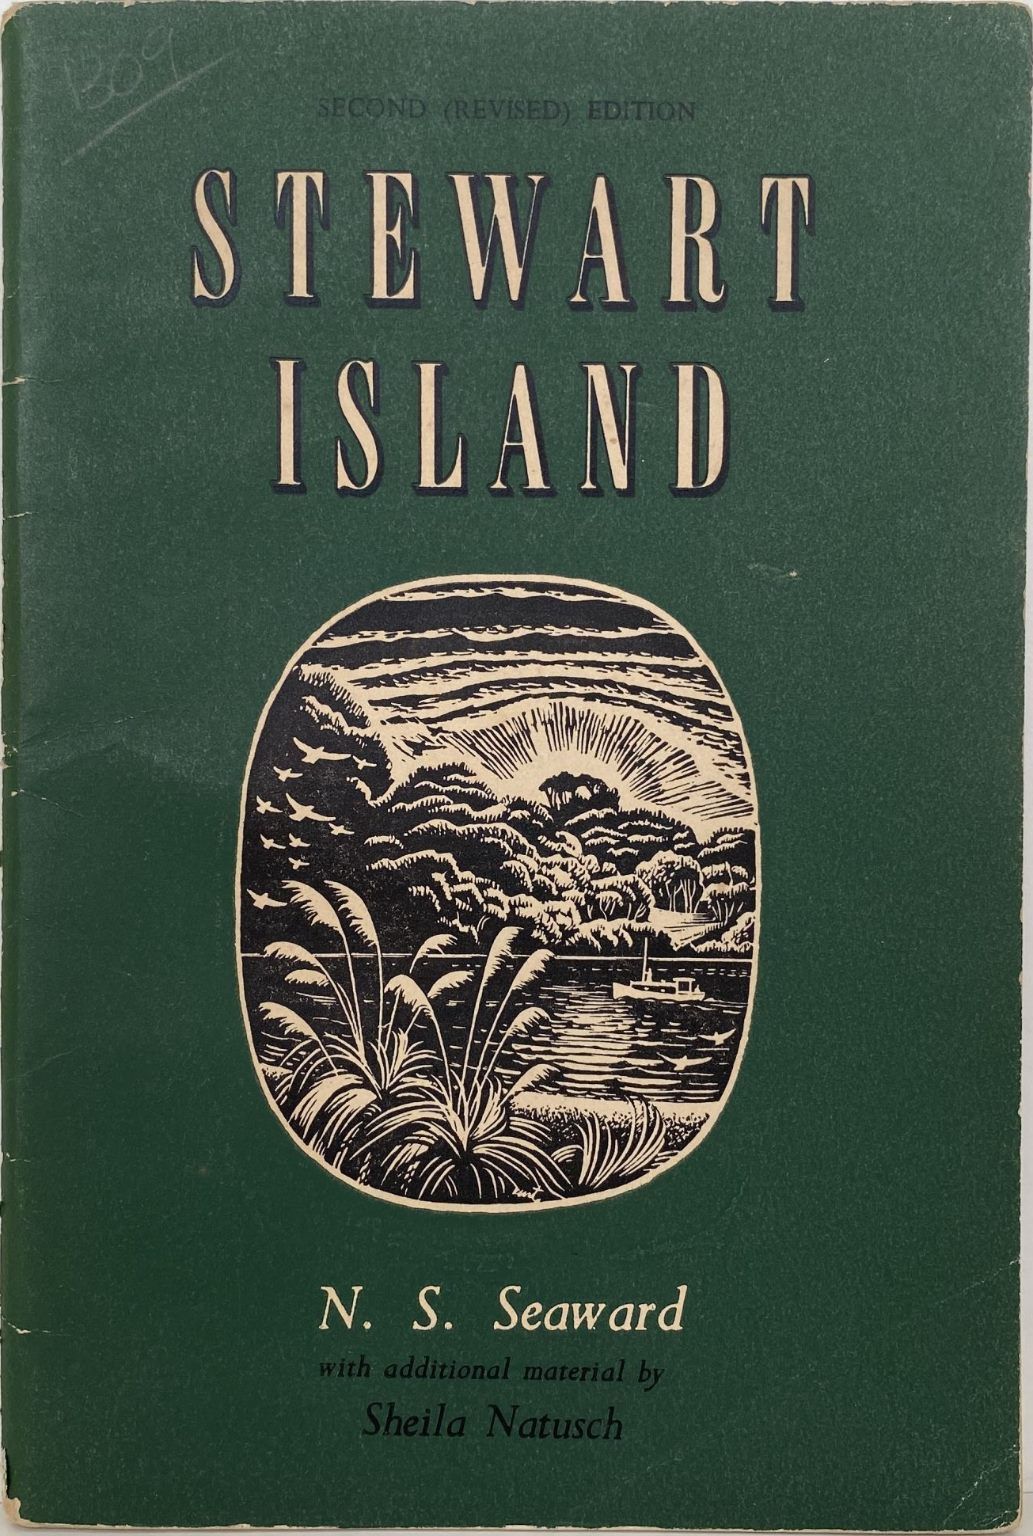 STEWART ISLAND